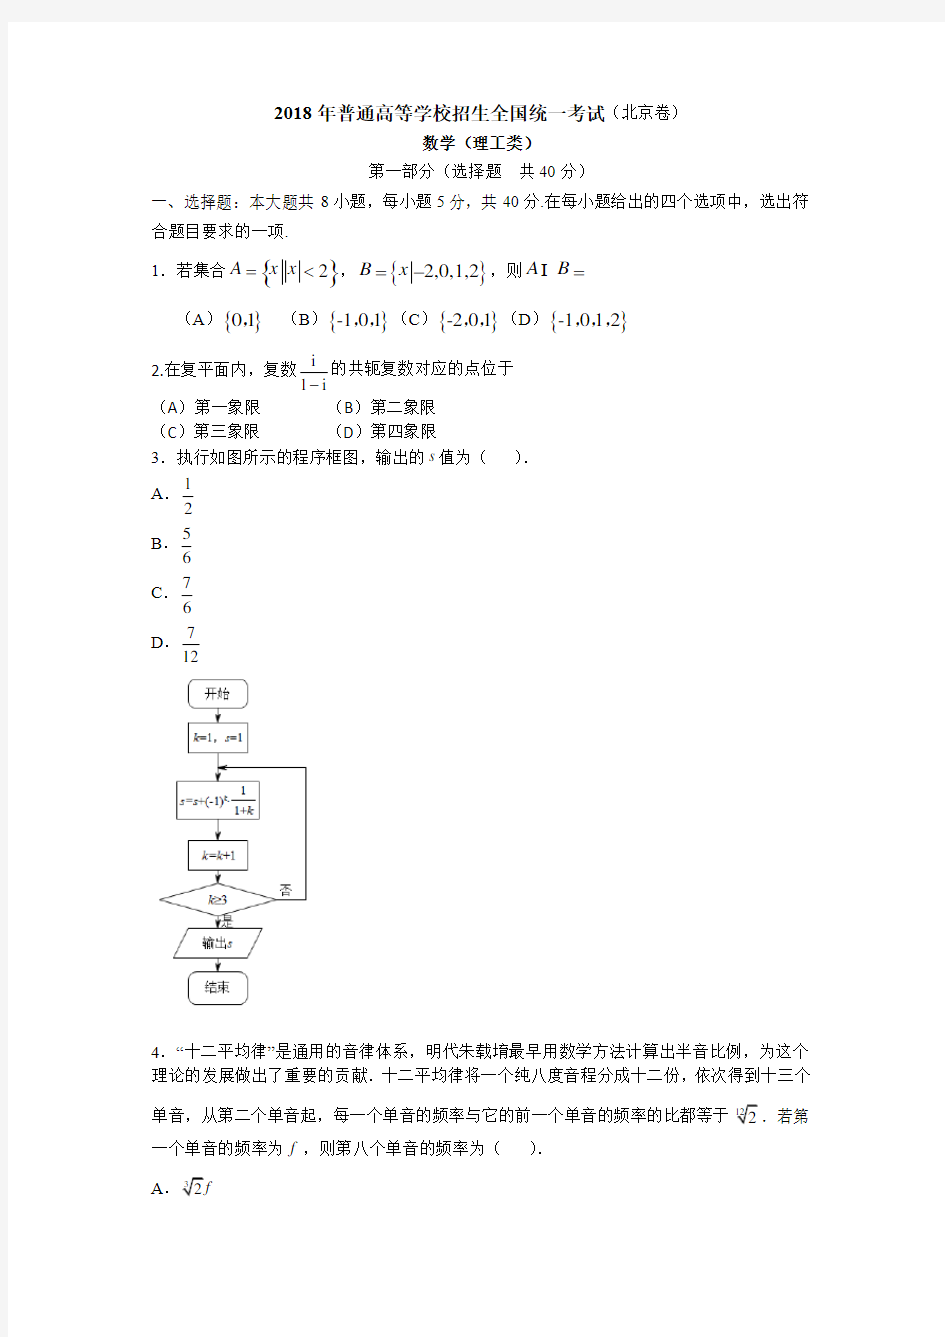 【真题】2018年北京市高考数学(理)试题含答案解析